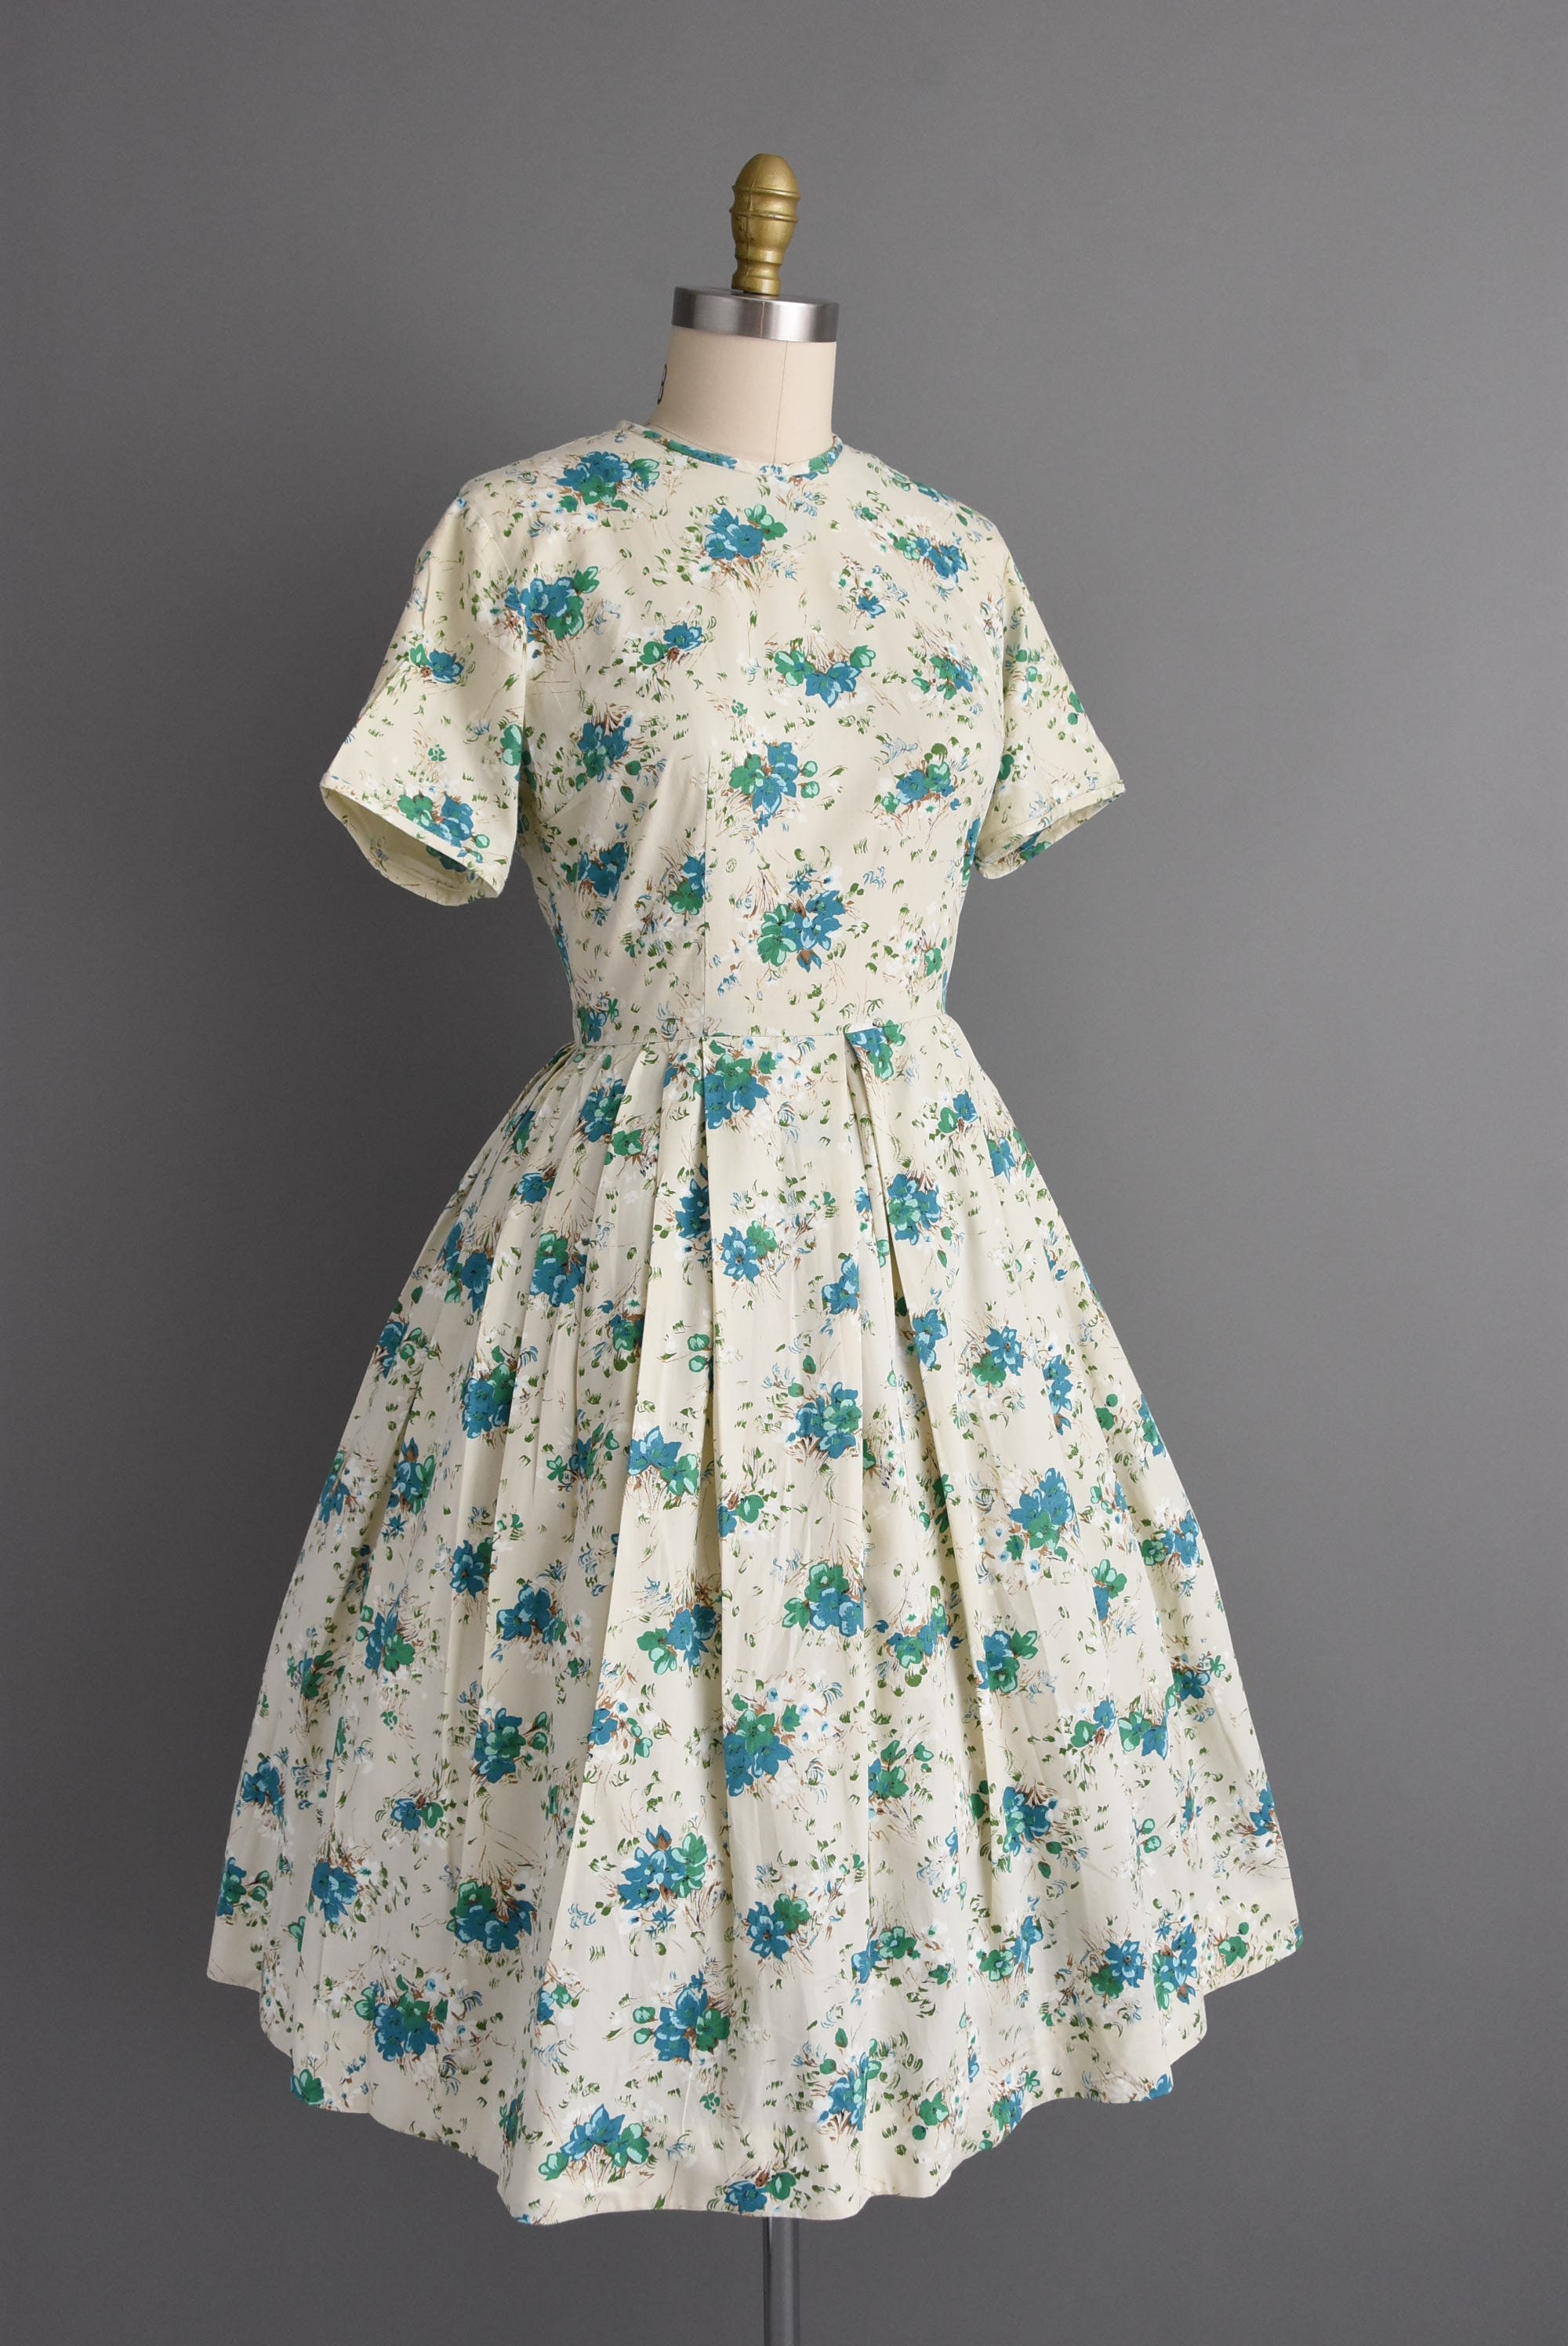 Floral 1940's Vintage Retro Lightweight Cotton Tea Dress 5 Colours New 8-20 